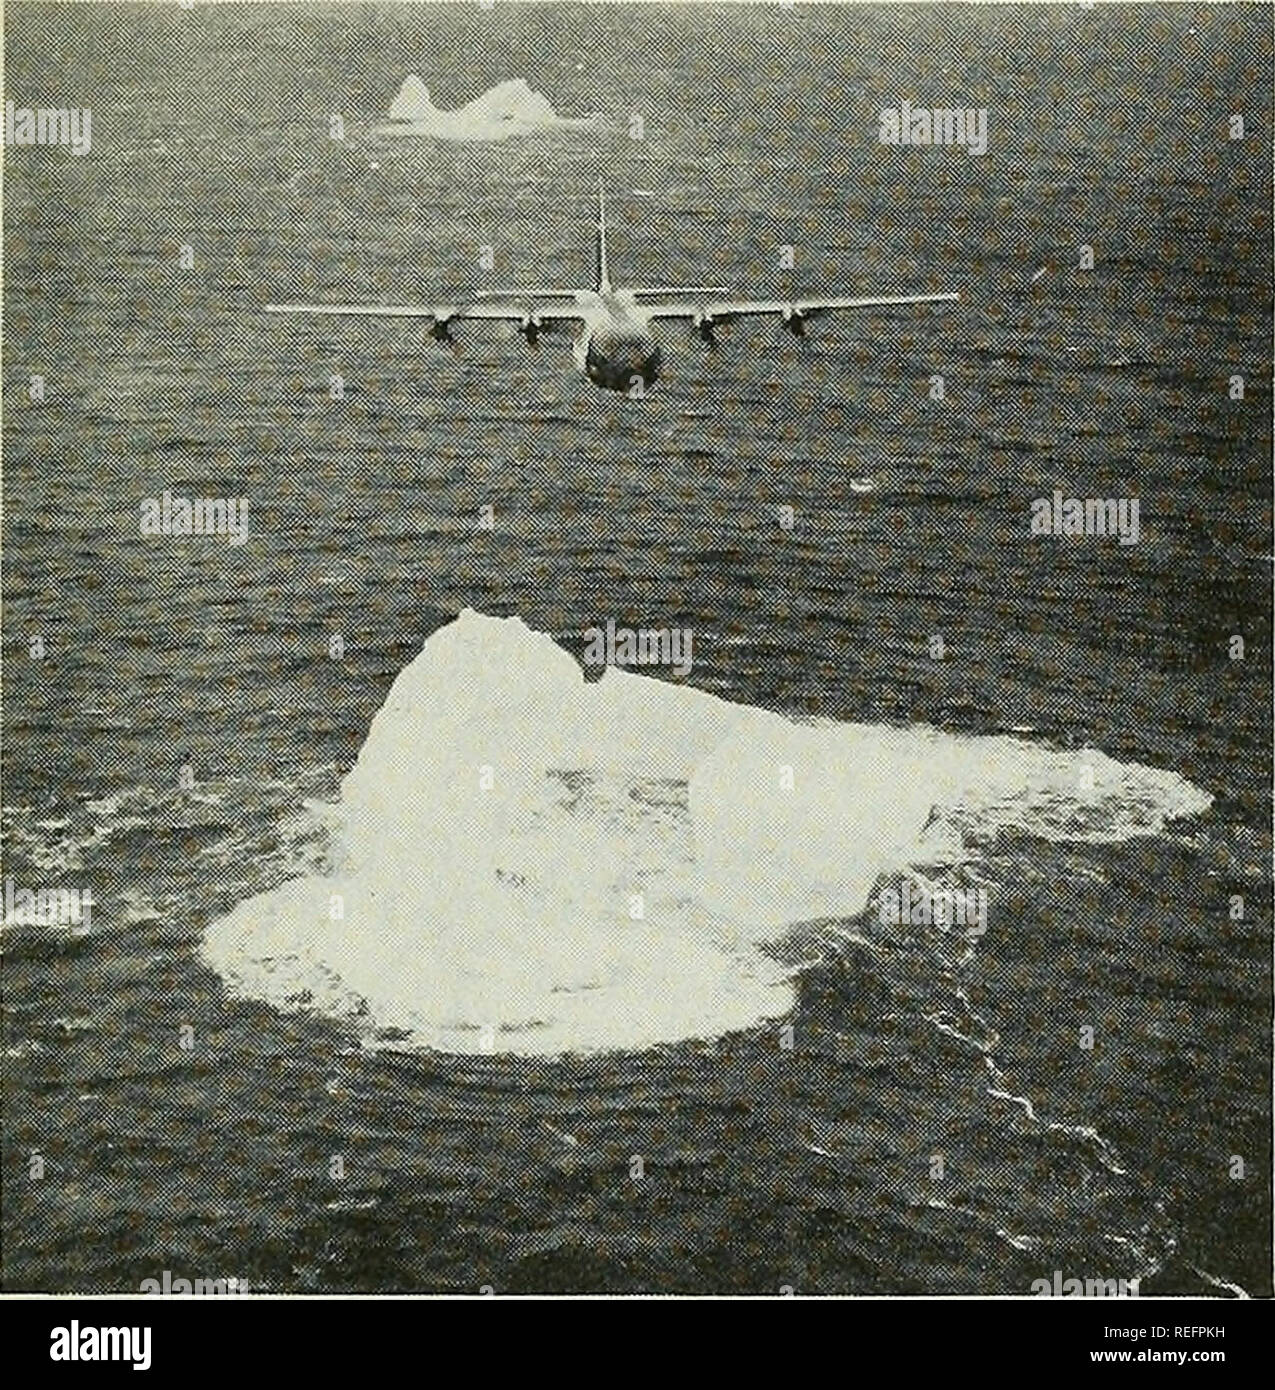 . Examen de la pêche commerciale. La pêche, le commerce du poisson. 13. Fig, 1 - avion de patrouille des glaces Icebergs Hedge-Popping-U depuis la Seconde Guerre mondiale, des avions, navires, n'ont pas effectué la majeure partie de la patrouille des glaces de la chasse de travail et le suivi des icebergs. Dans ce chef-d'une vue sur HC-130-B "Hercules" avion de patrouille des glaces, l'avion est hedge-hopping une rangée d'icebergs au large de la côte du Labrador, le Berg en premier plan a été choisi pour le suivi des mouvements avec les courants en le marquant avec le chlorure de calcium est passé par voie aérienne-rhodamine B (rouge brillant) dye bomb, (Photo : U, S, Garde côtière canadienne) Patrol est Banque D'Images